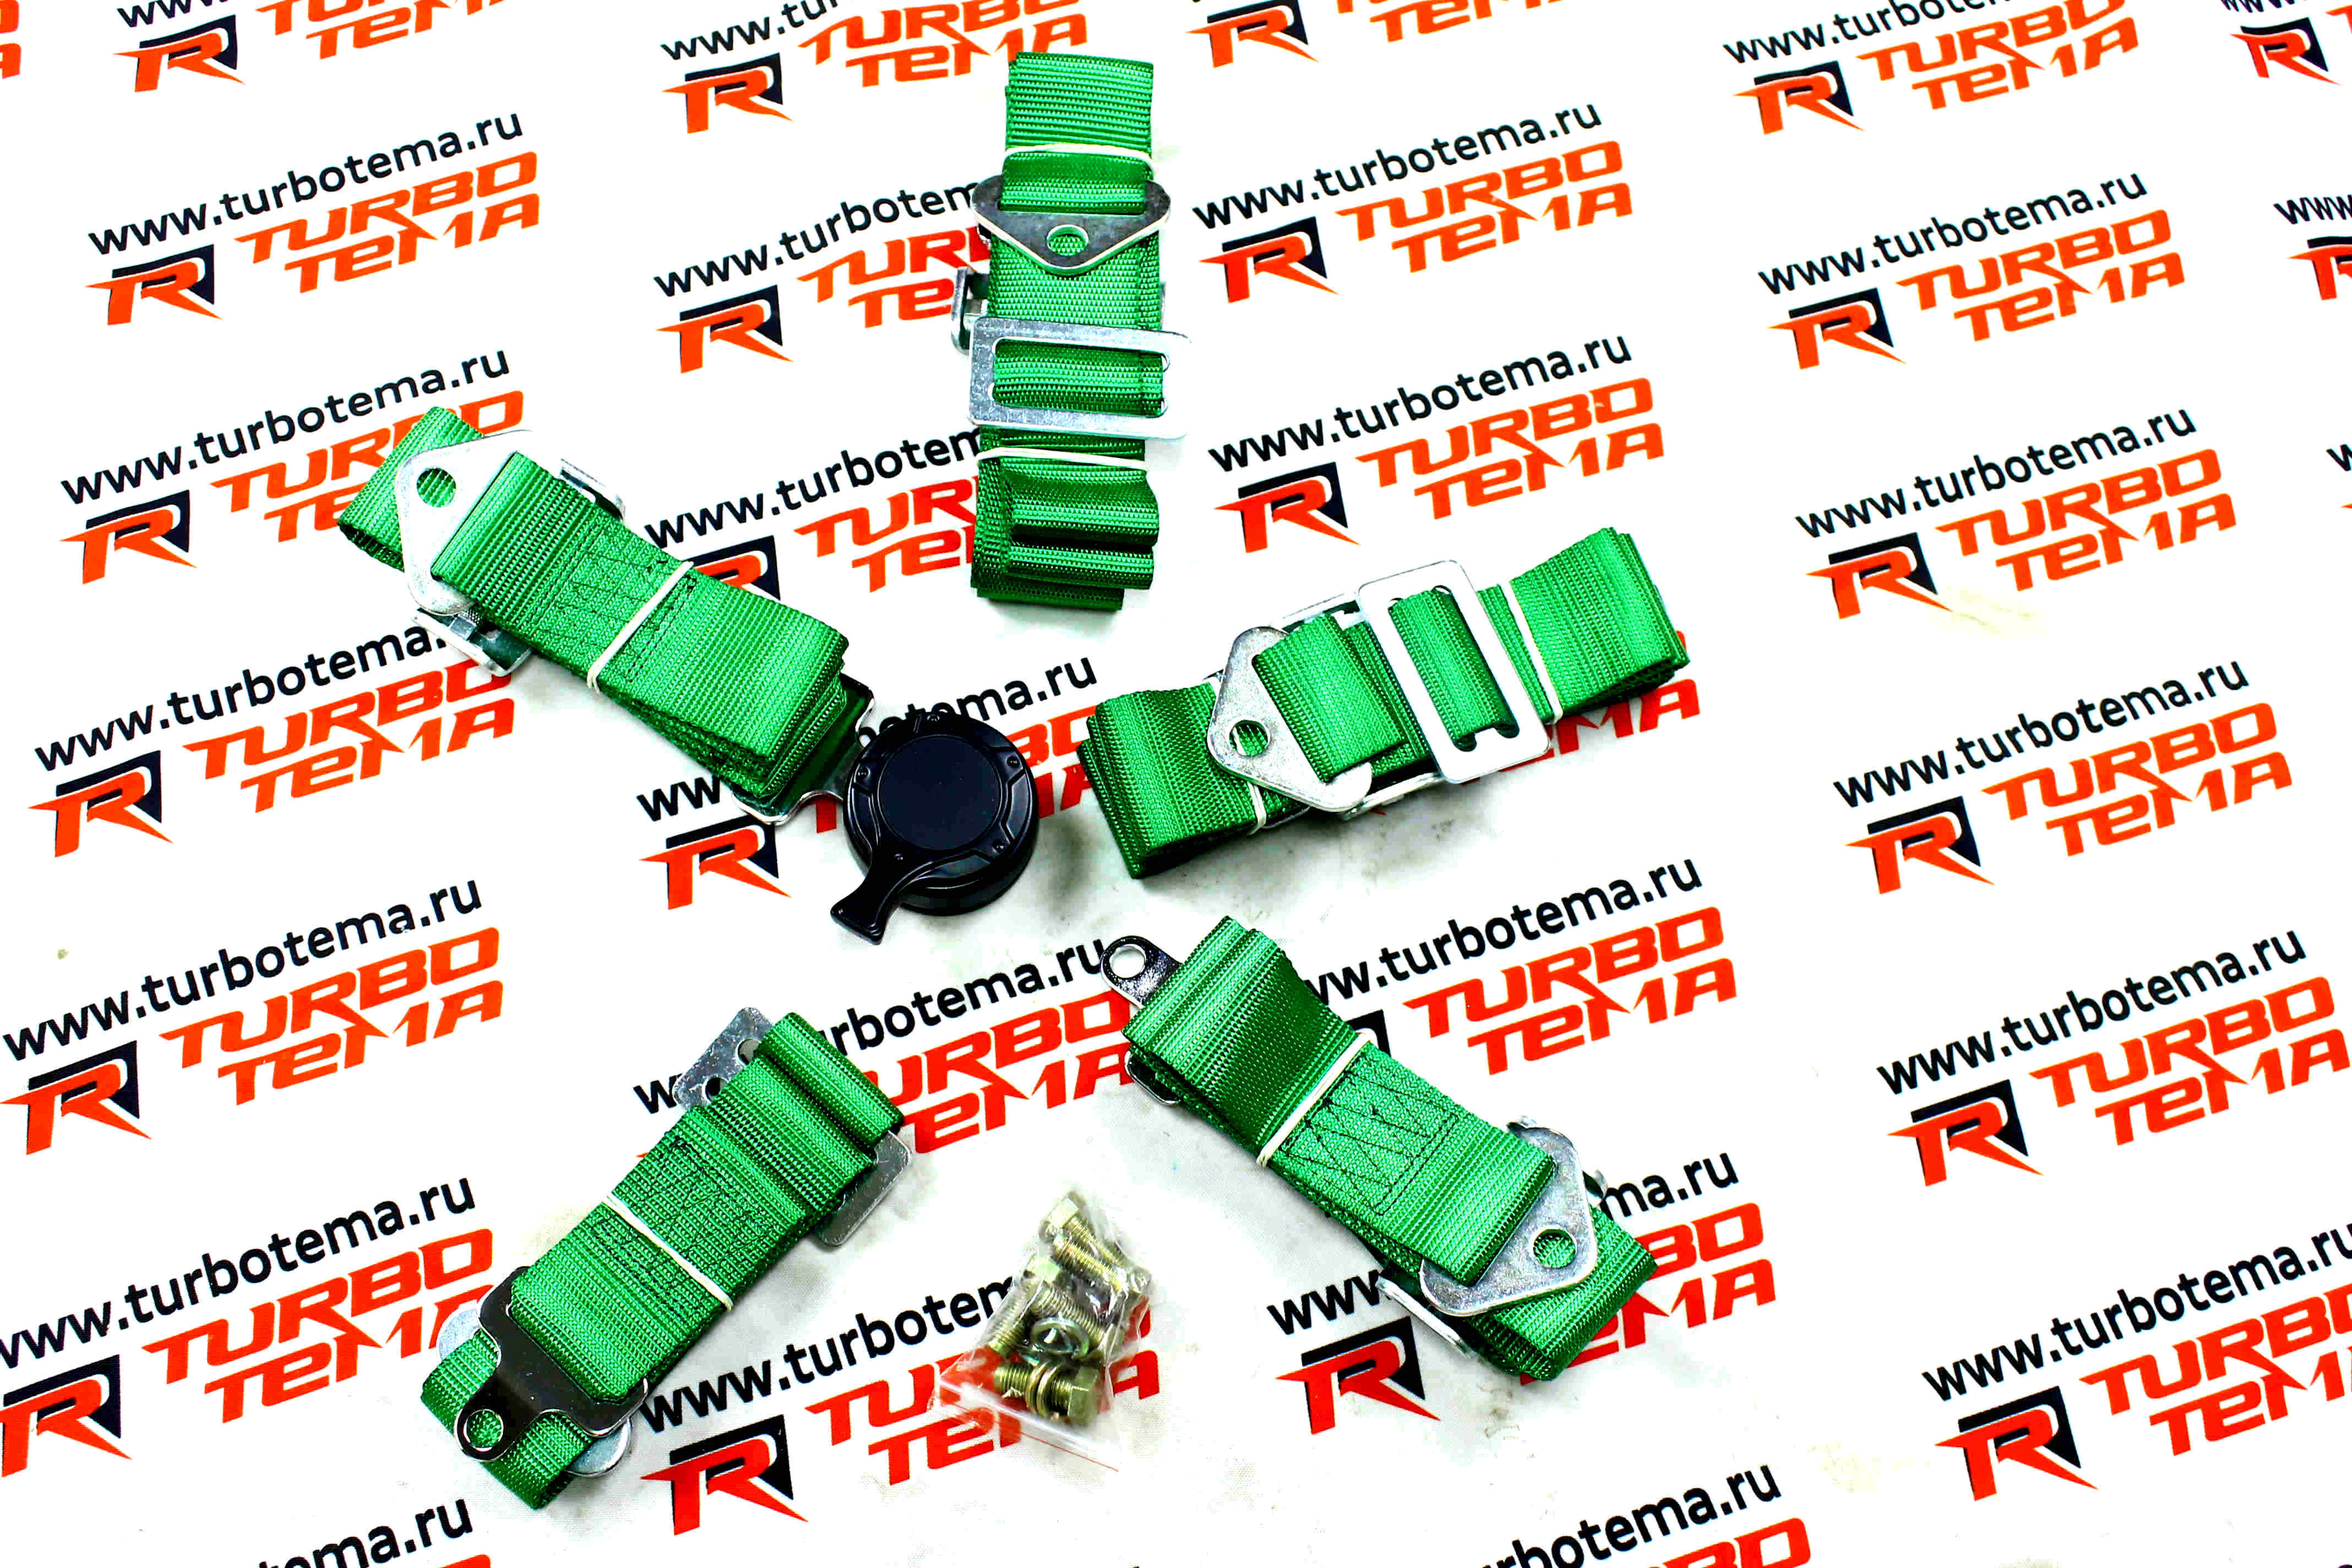 Ремни безопасности "TURBOTEMA" 5-ти точечные, 2" ширина, быстросъемные (зеленые) JBR4001-5. Фото �2